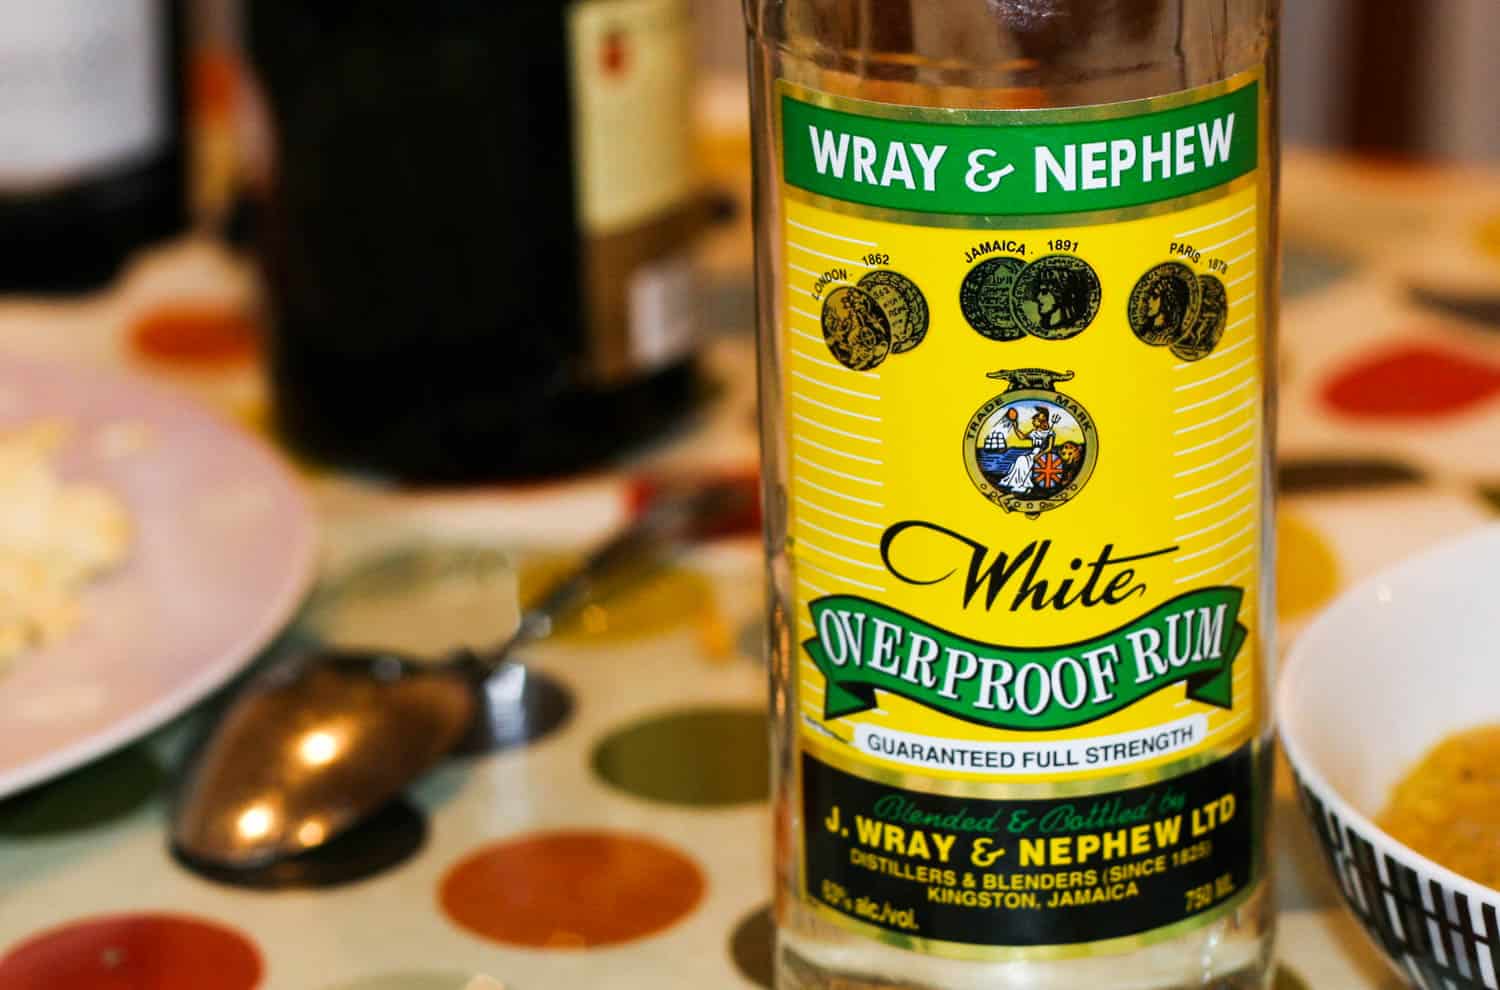 Bottle of Wray & Nephew overproof rum